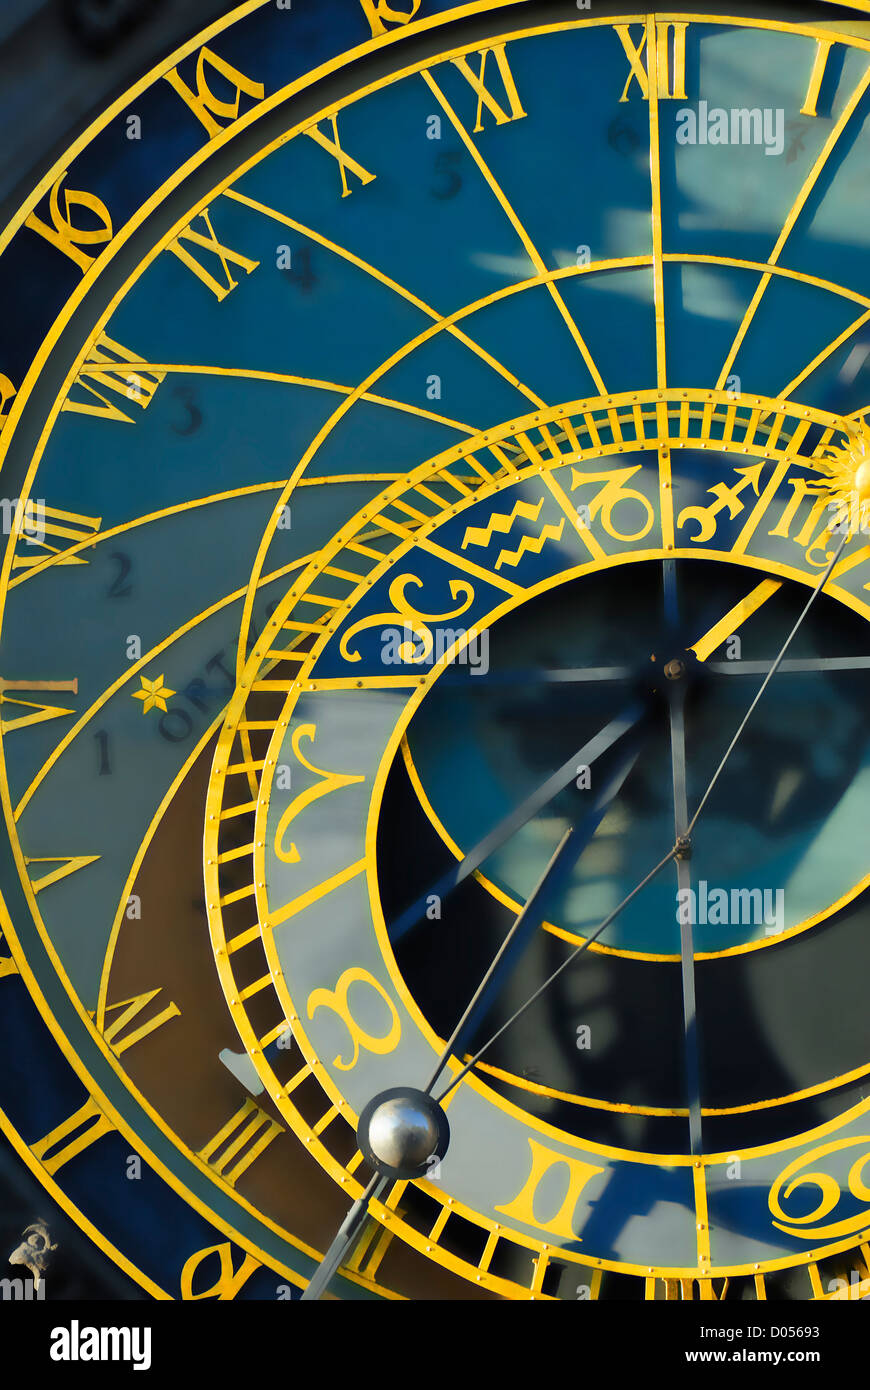 Praga, República Checa. / Reloj Astronómico Orloj, Ayuntamiento, Plaza de la Ciudad Vieja. Manipulado digitalmente Foto de stock